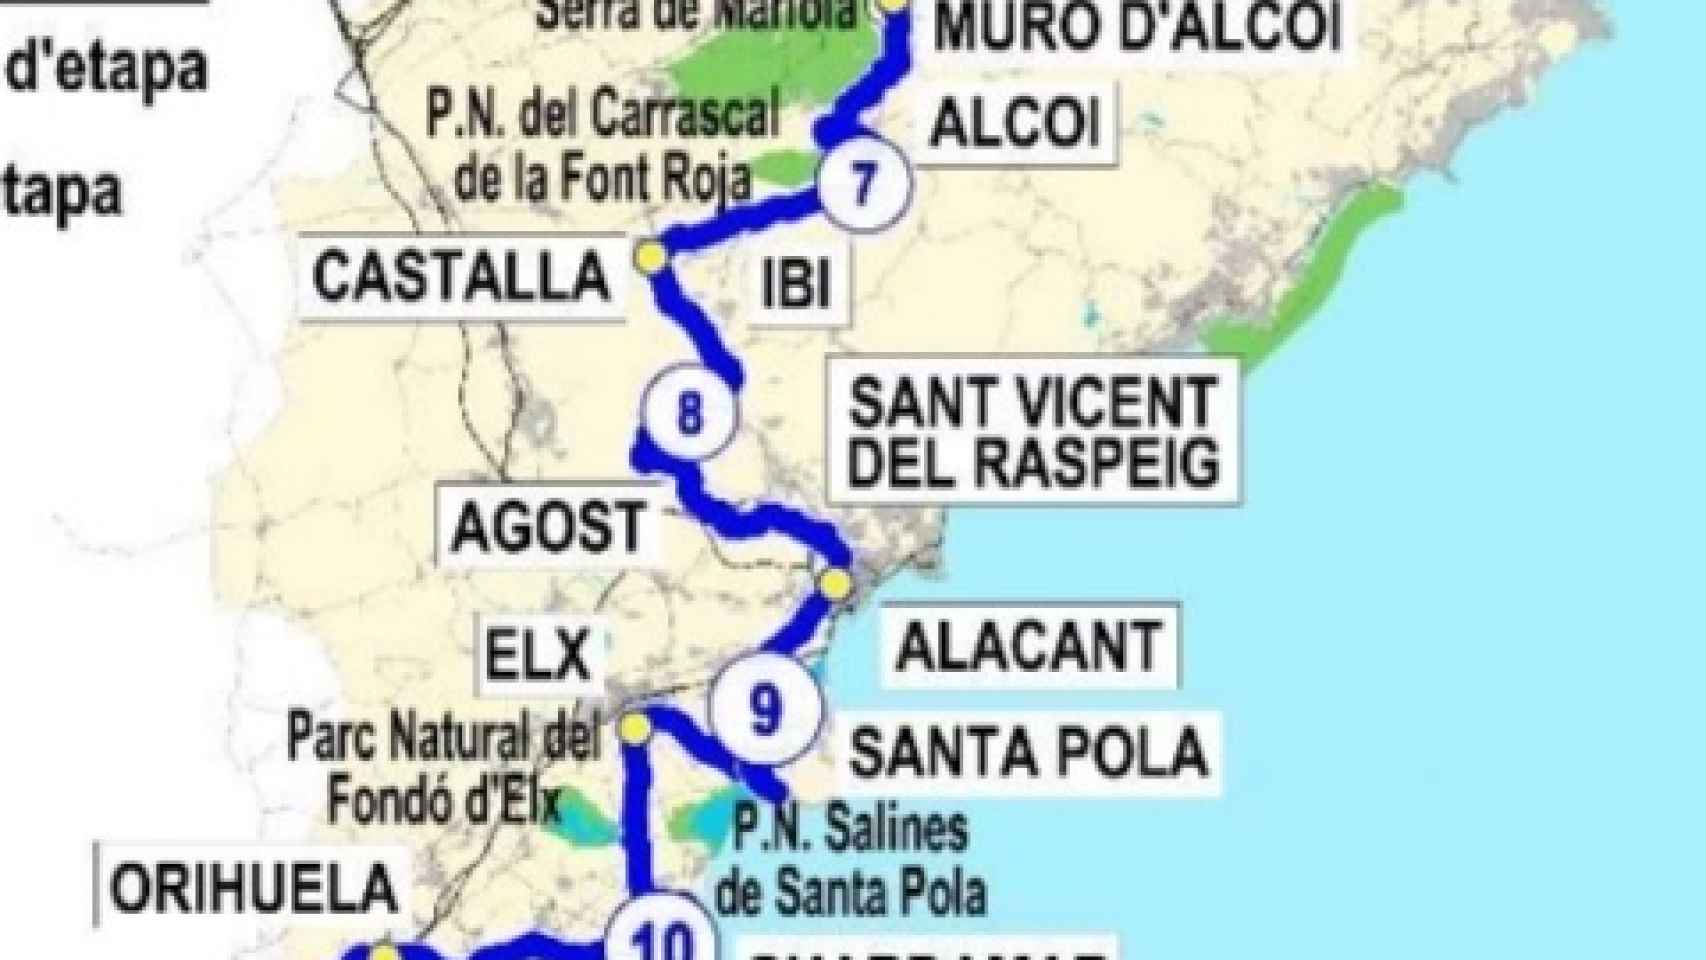 Mapa proyectado del Eurovelo con las rutas para la provincia de Alicante